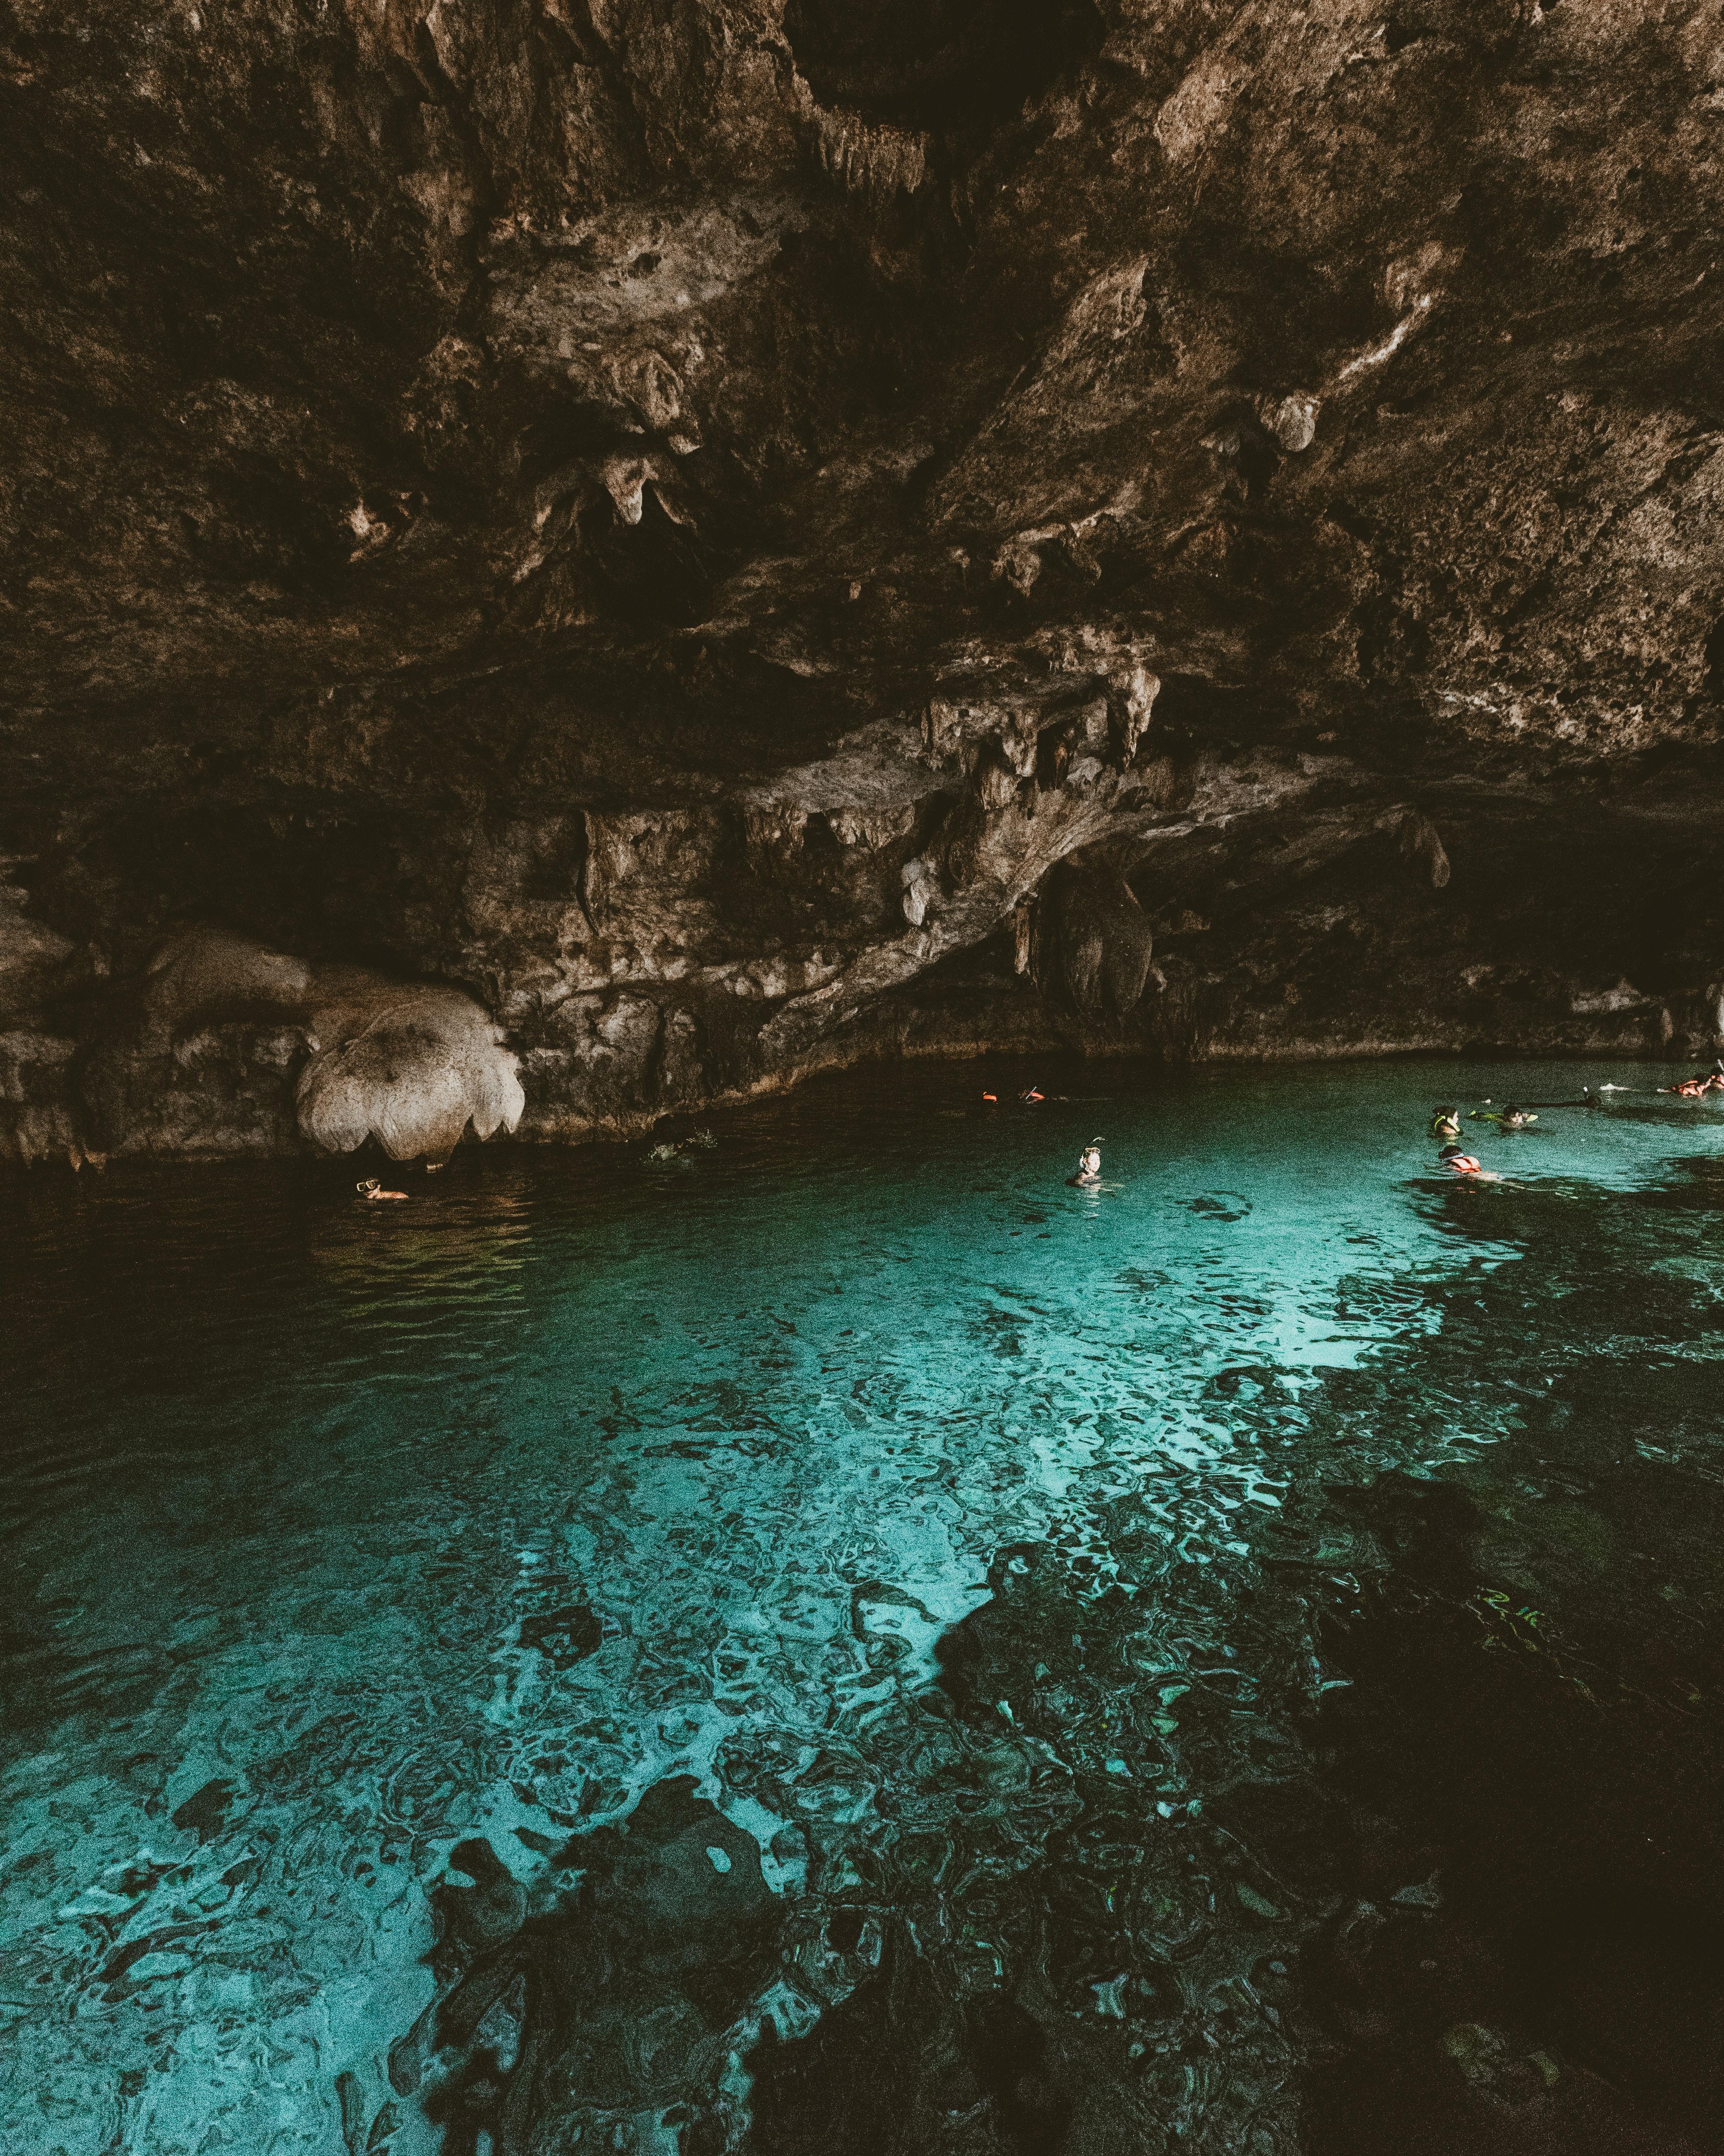 Amachi Lost Sea Caverns Adventure 5 Dec 2020 - roblox quill lake lost sea location